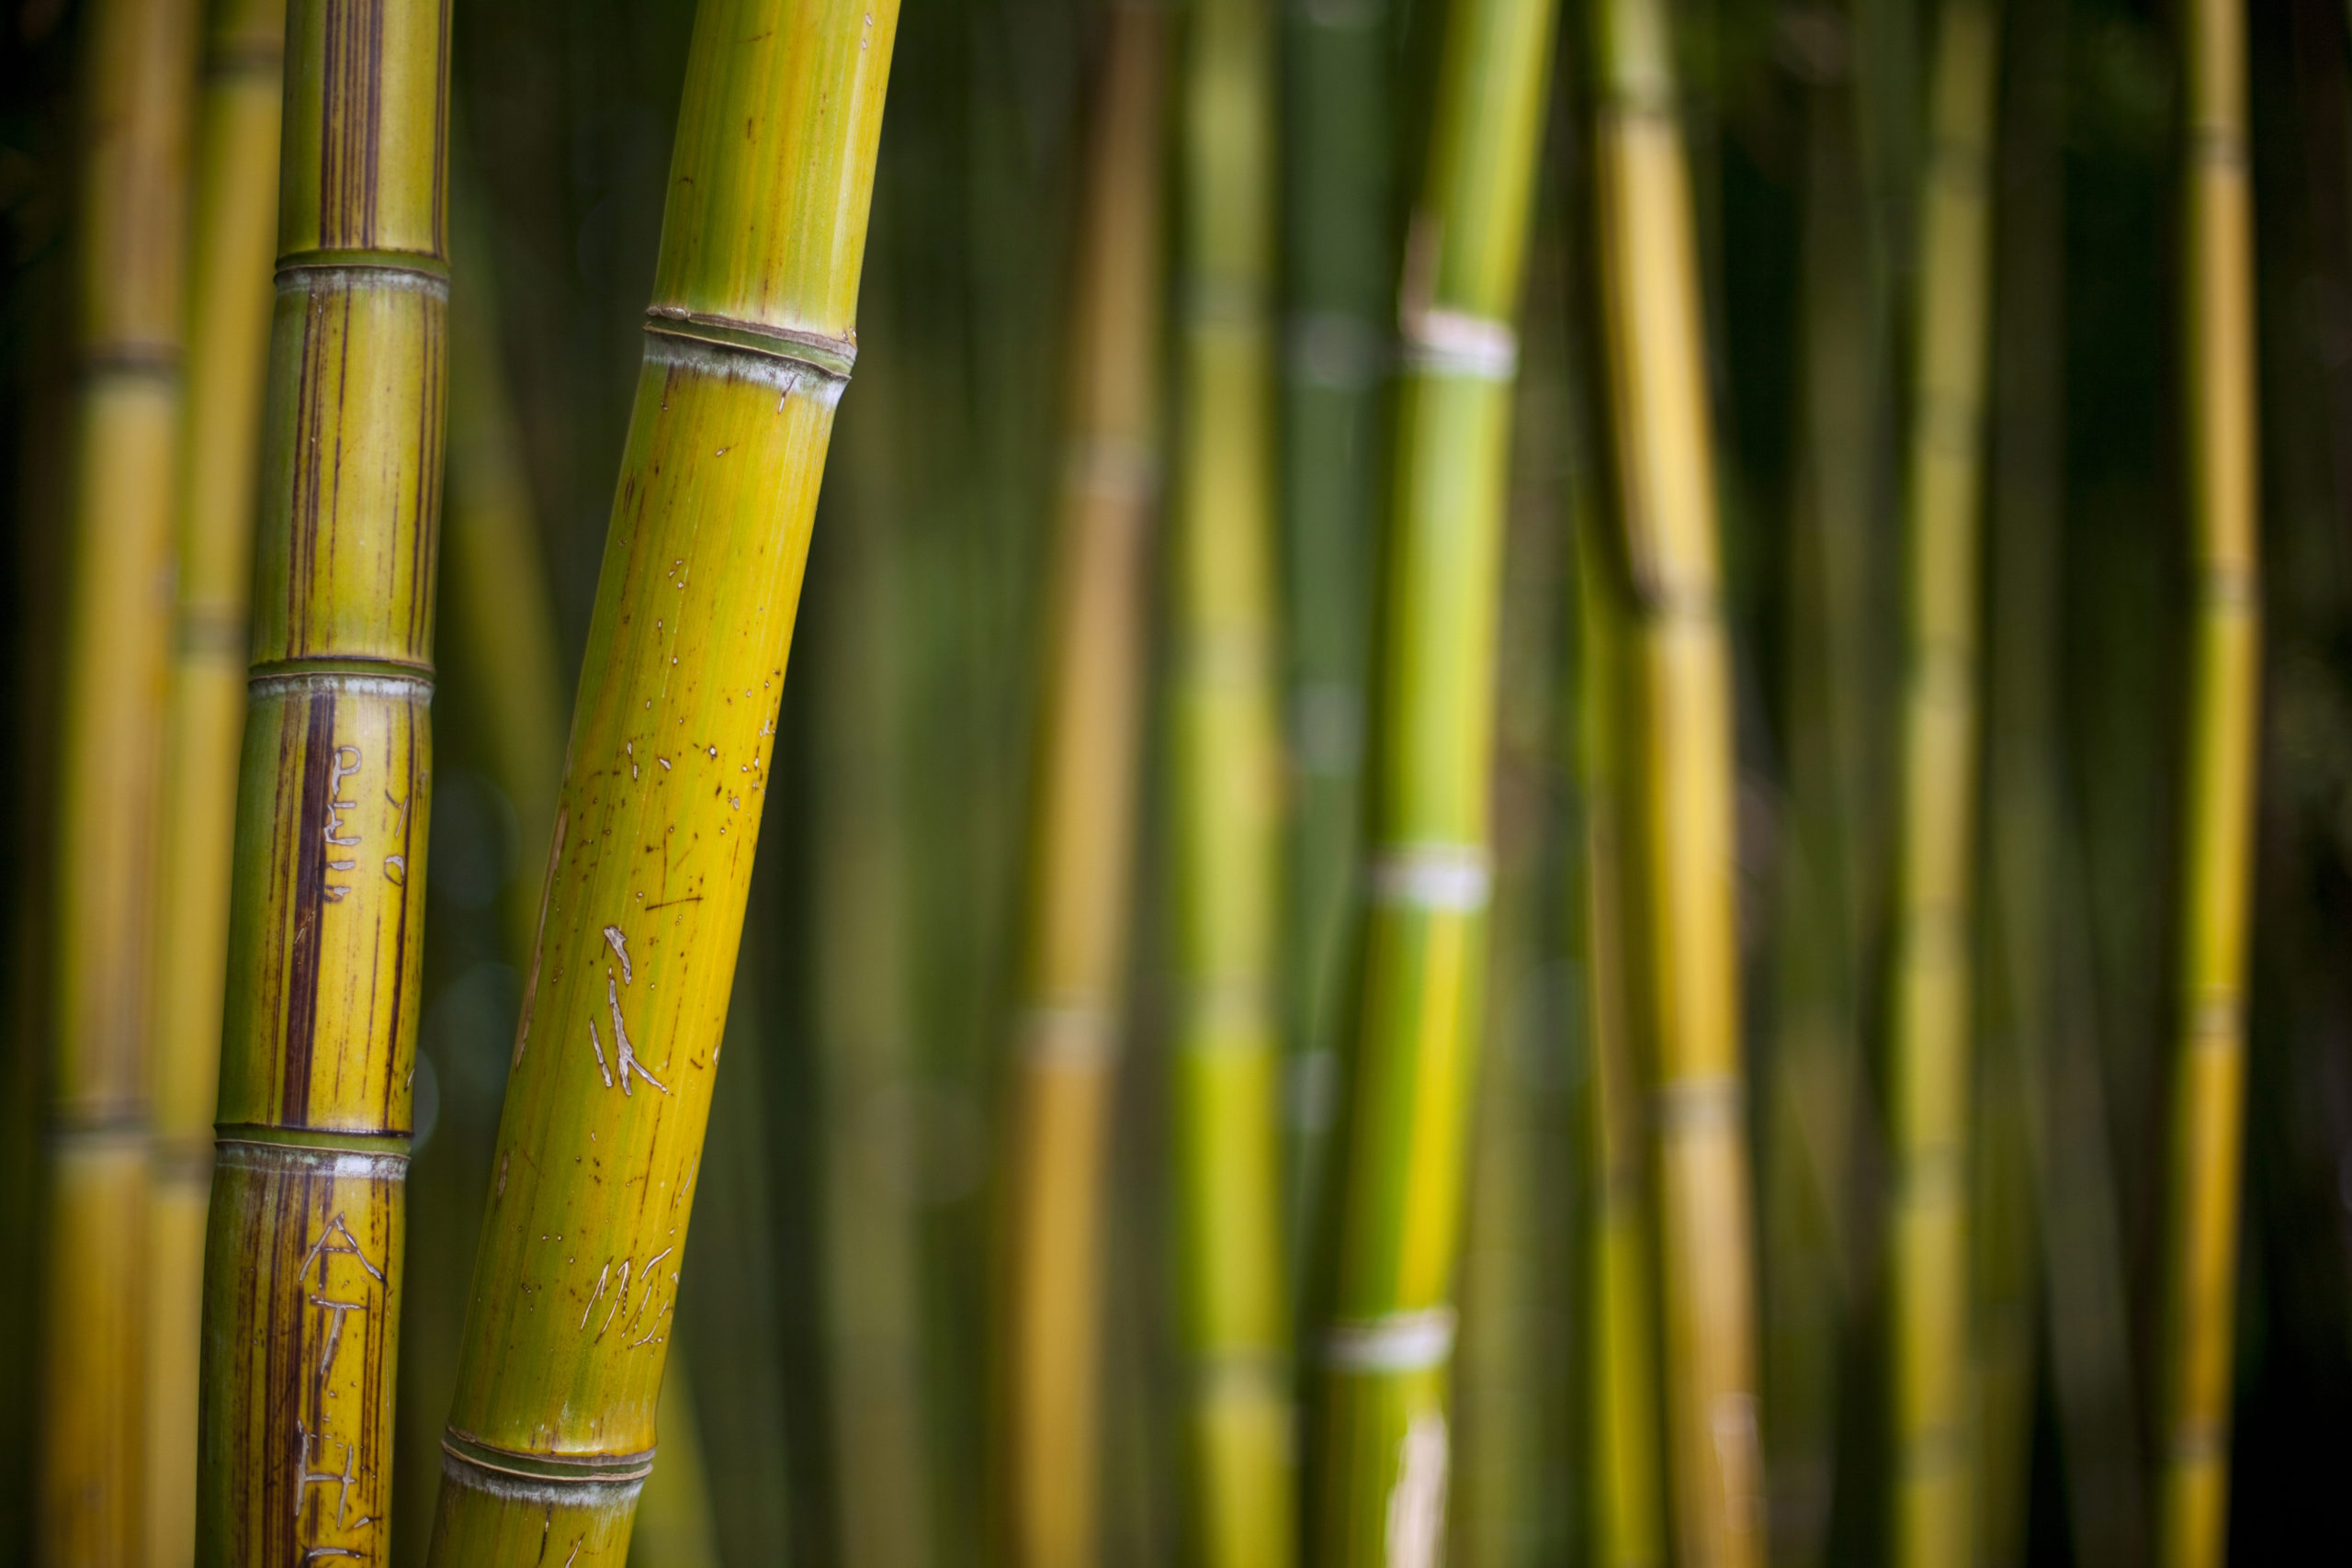 Fibra de Bambú: El nuevo material textil natural, fresco, antibacterias y ecológico.